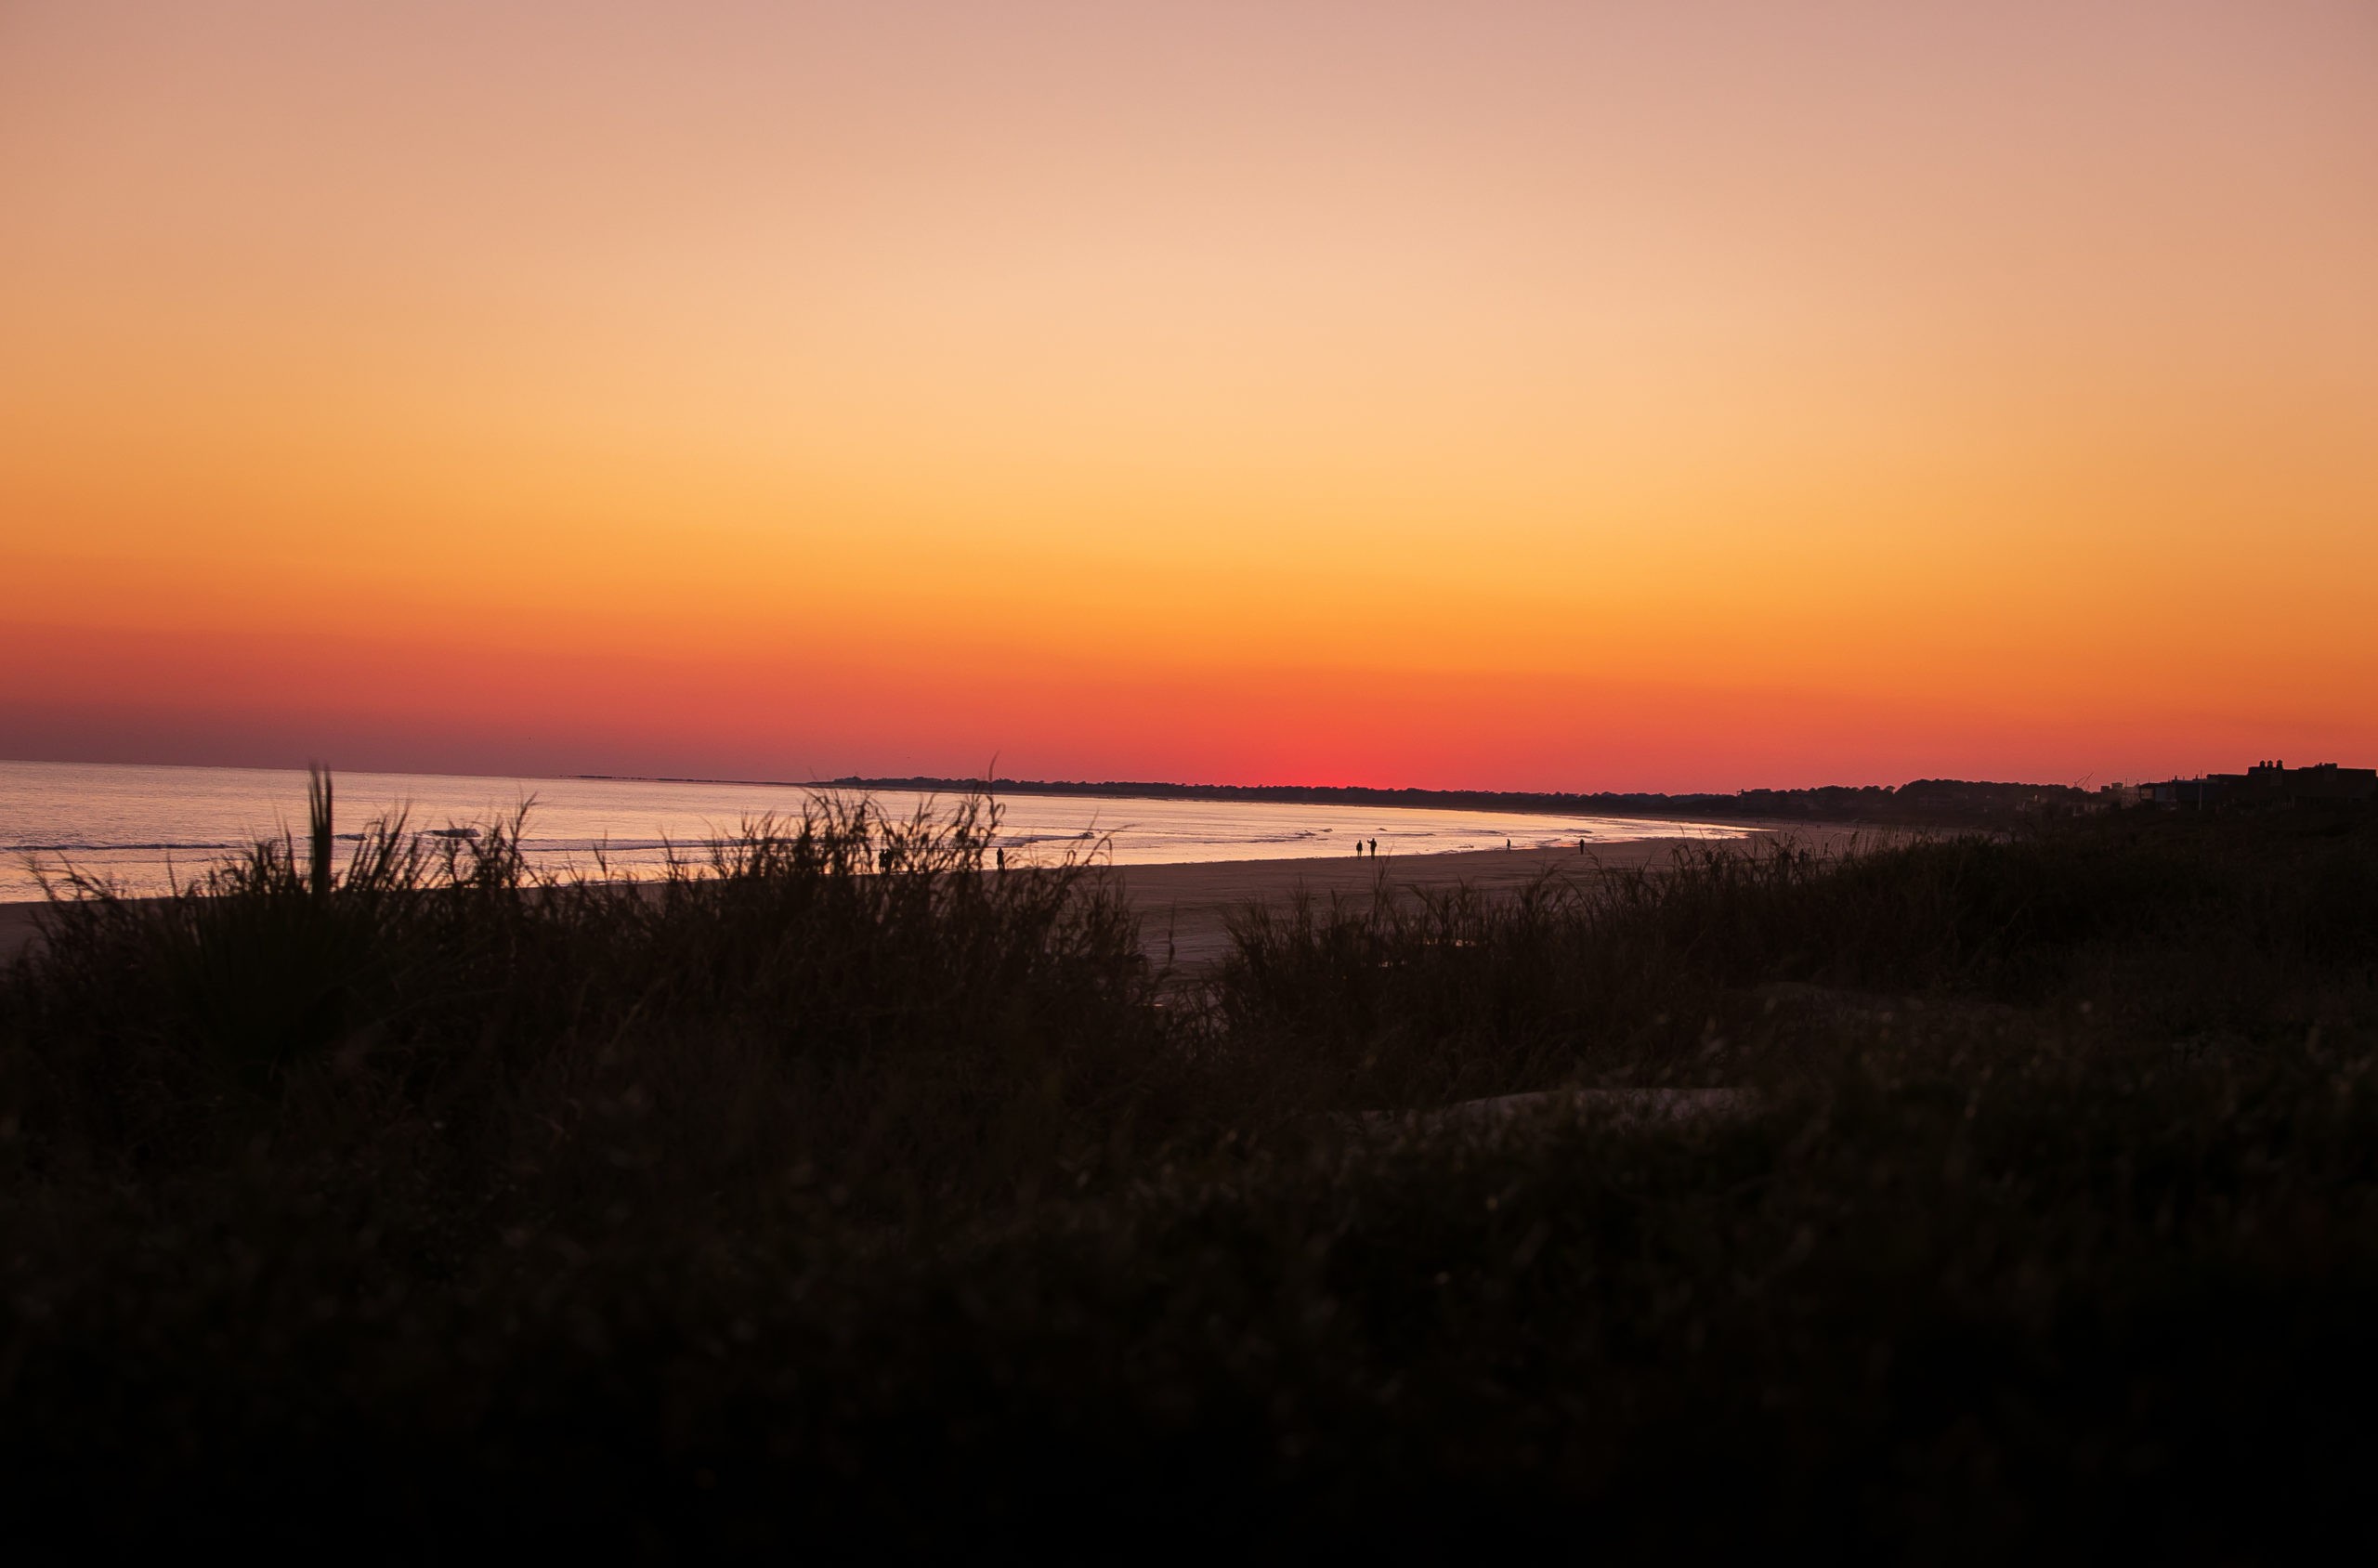 Les 17 meilleurs hôtels de Charleston pour admirer un magnifique lever ou coucher de soleil 